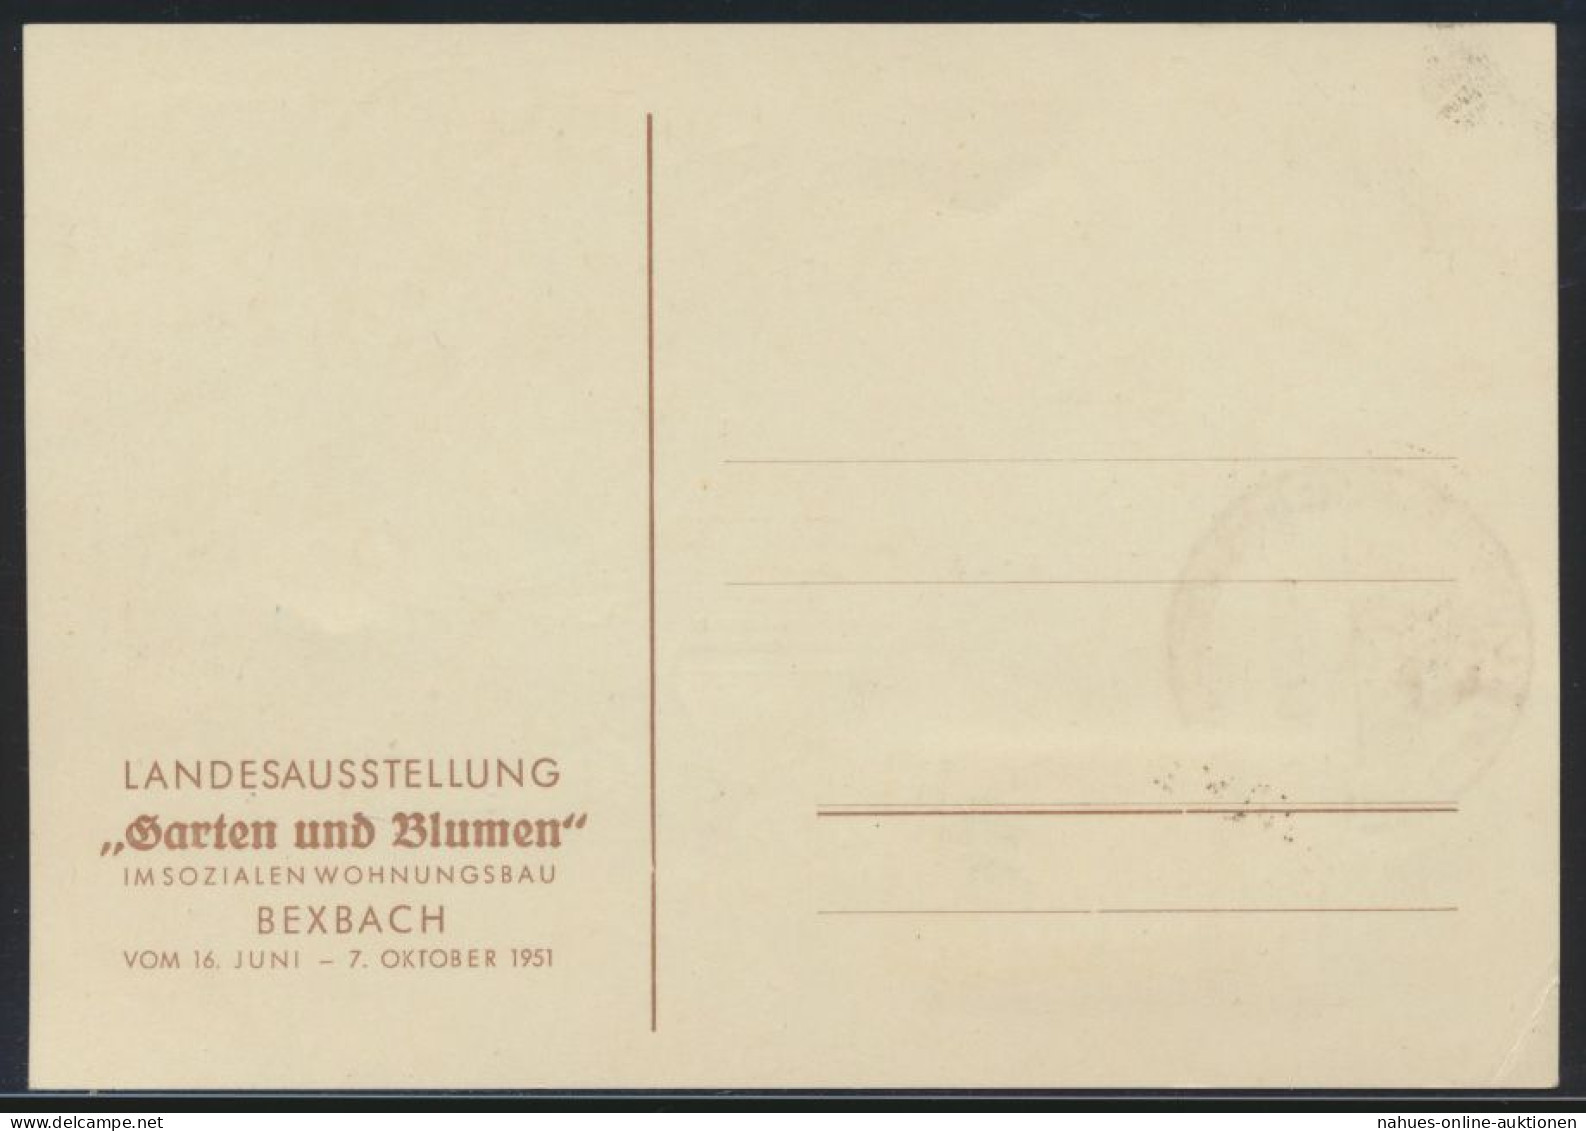 Saarland Brief 307 Gute Anlaßkarte Ausstellung Garten Blumen Maximumkarte FDC - Gebraucht